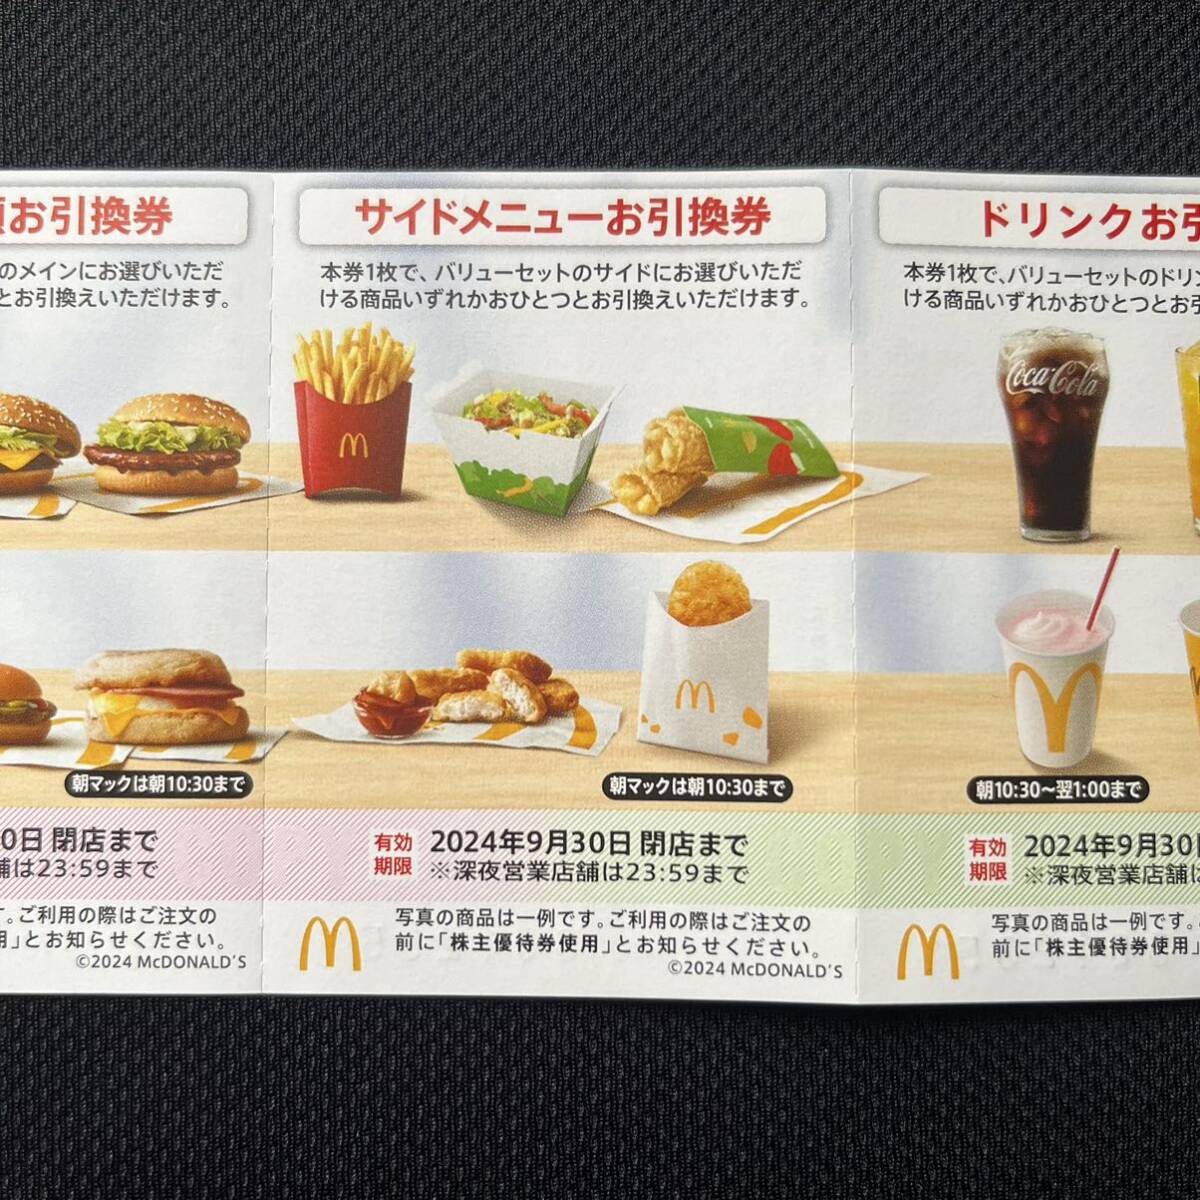  McDonald's акционер гостеприимство * сиденье 1 листов ( несколько листов есть )*9 месяц 30 до дня * быстрое решение возможно * стоимость доставки 63 иен ~